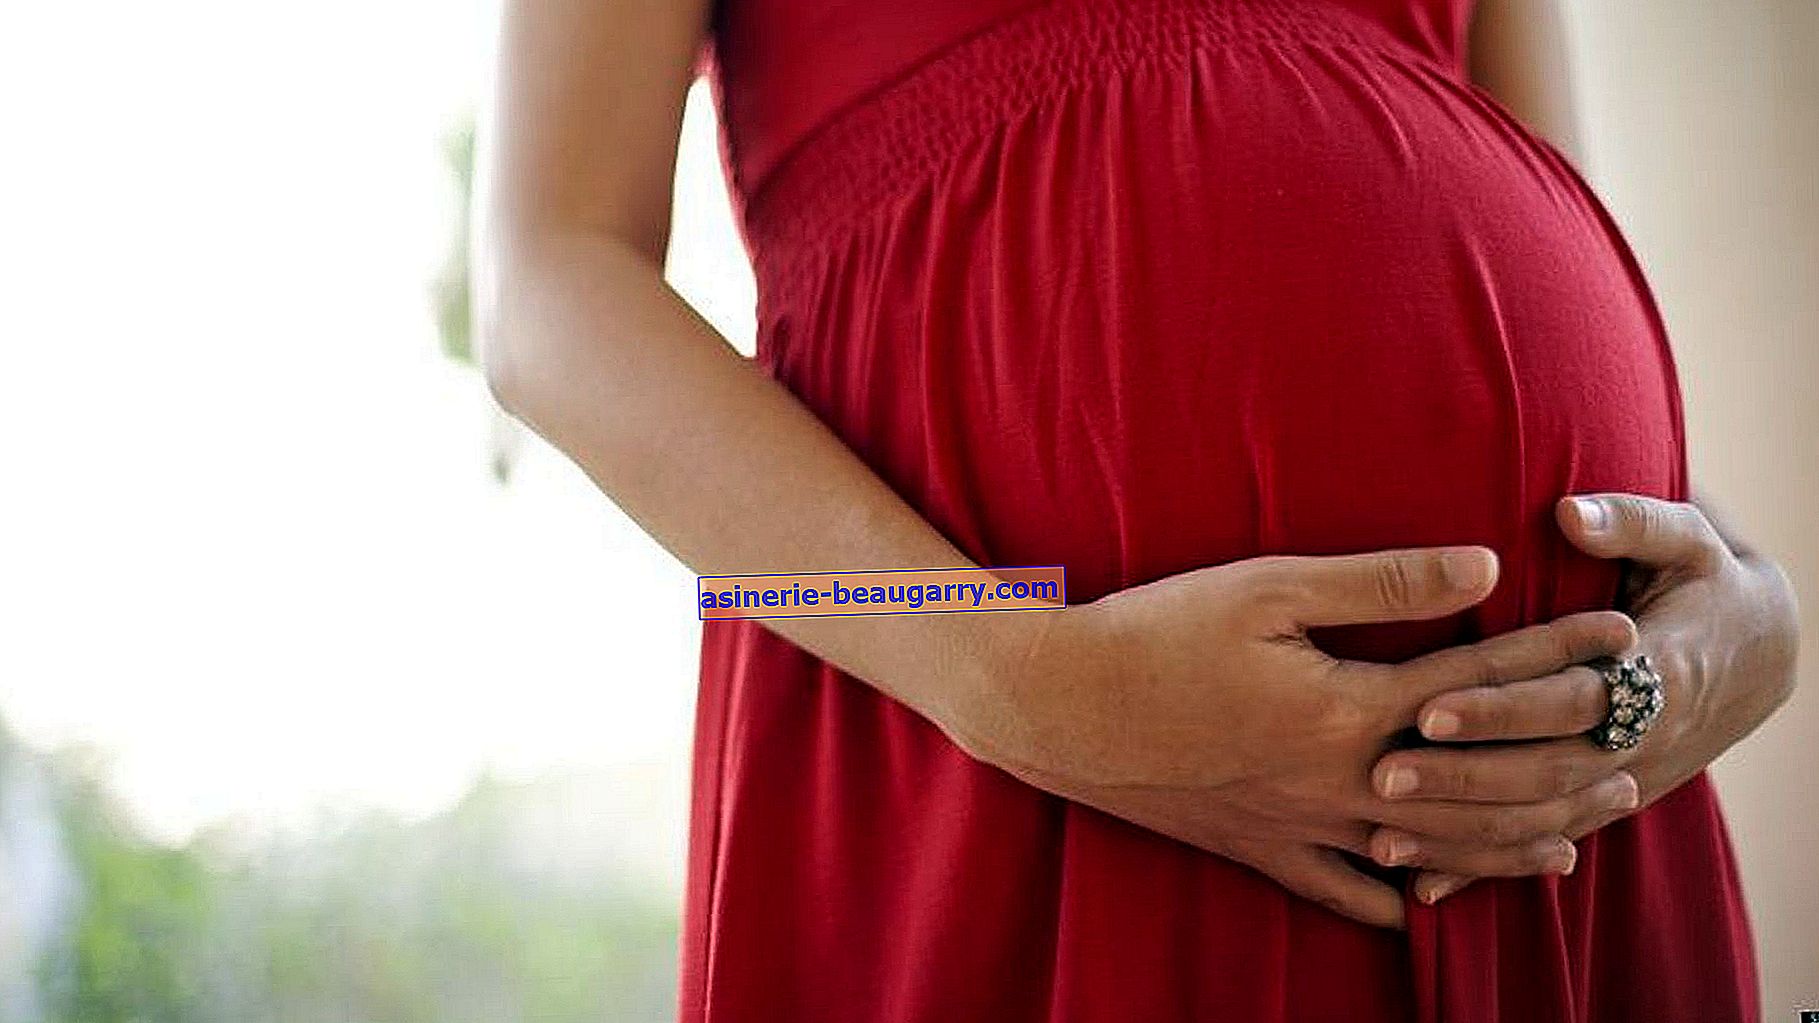 Les 10 questions les plus curieuses pendant la grossesse